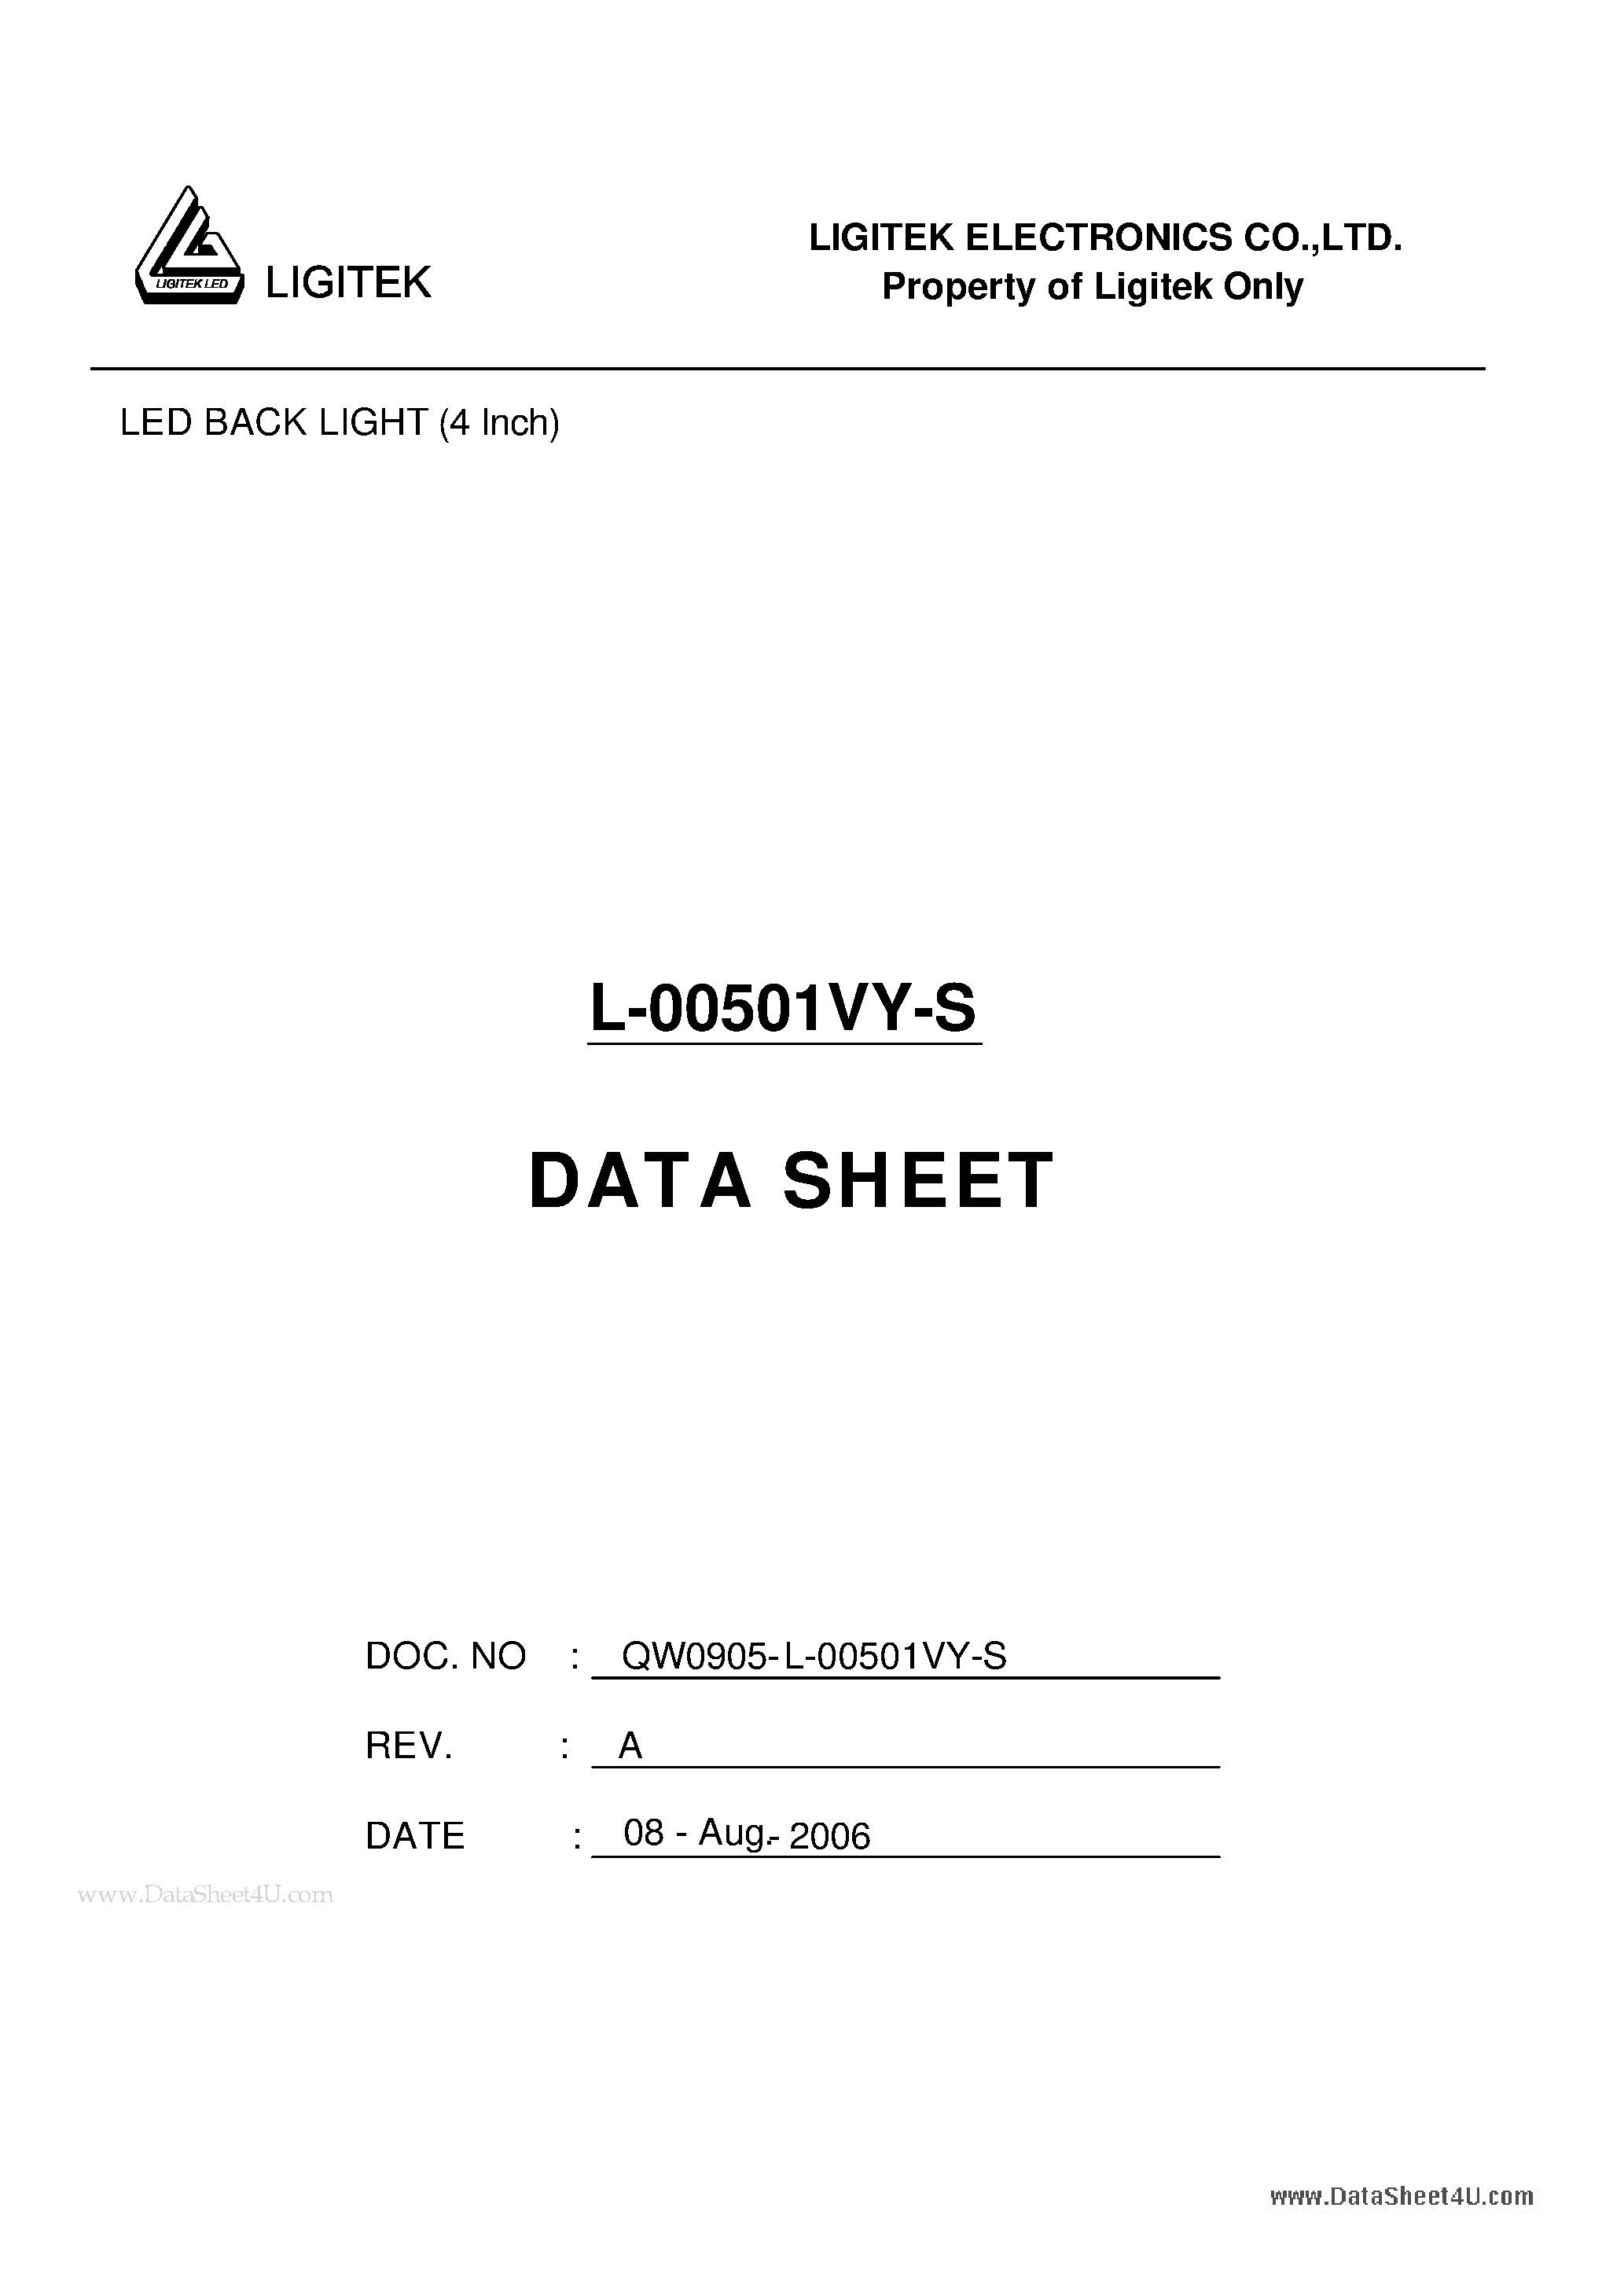 Даташит L-00501VY-S - LED BACK LIGHT (4 Inch) страница 1